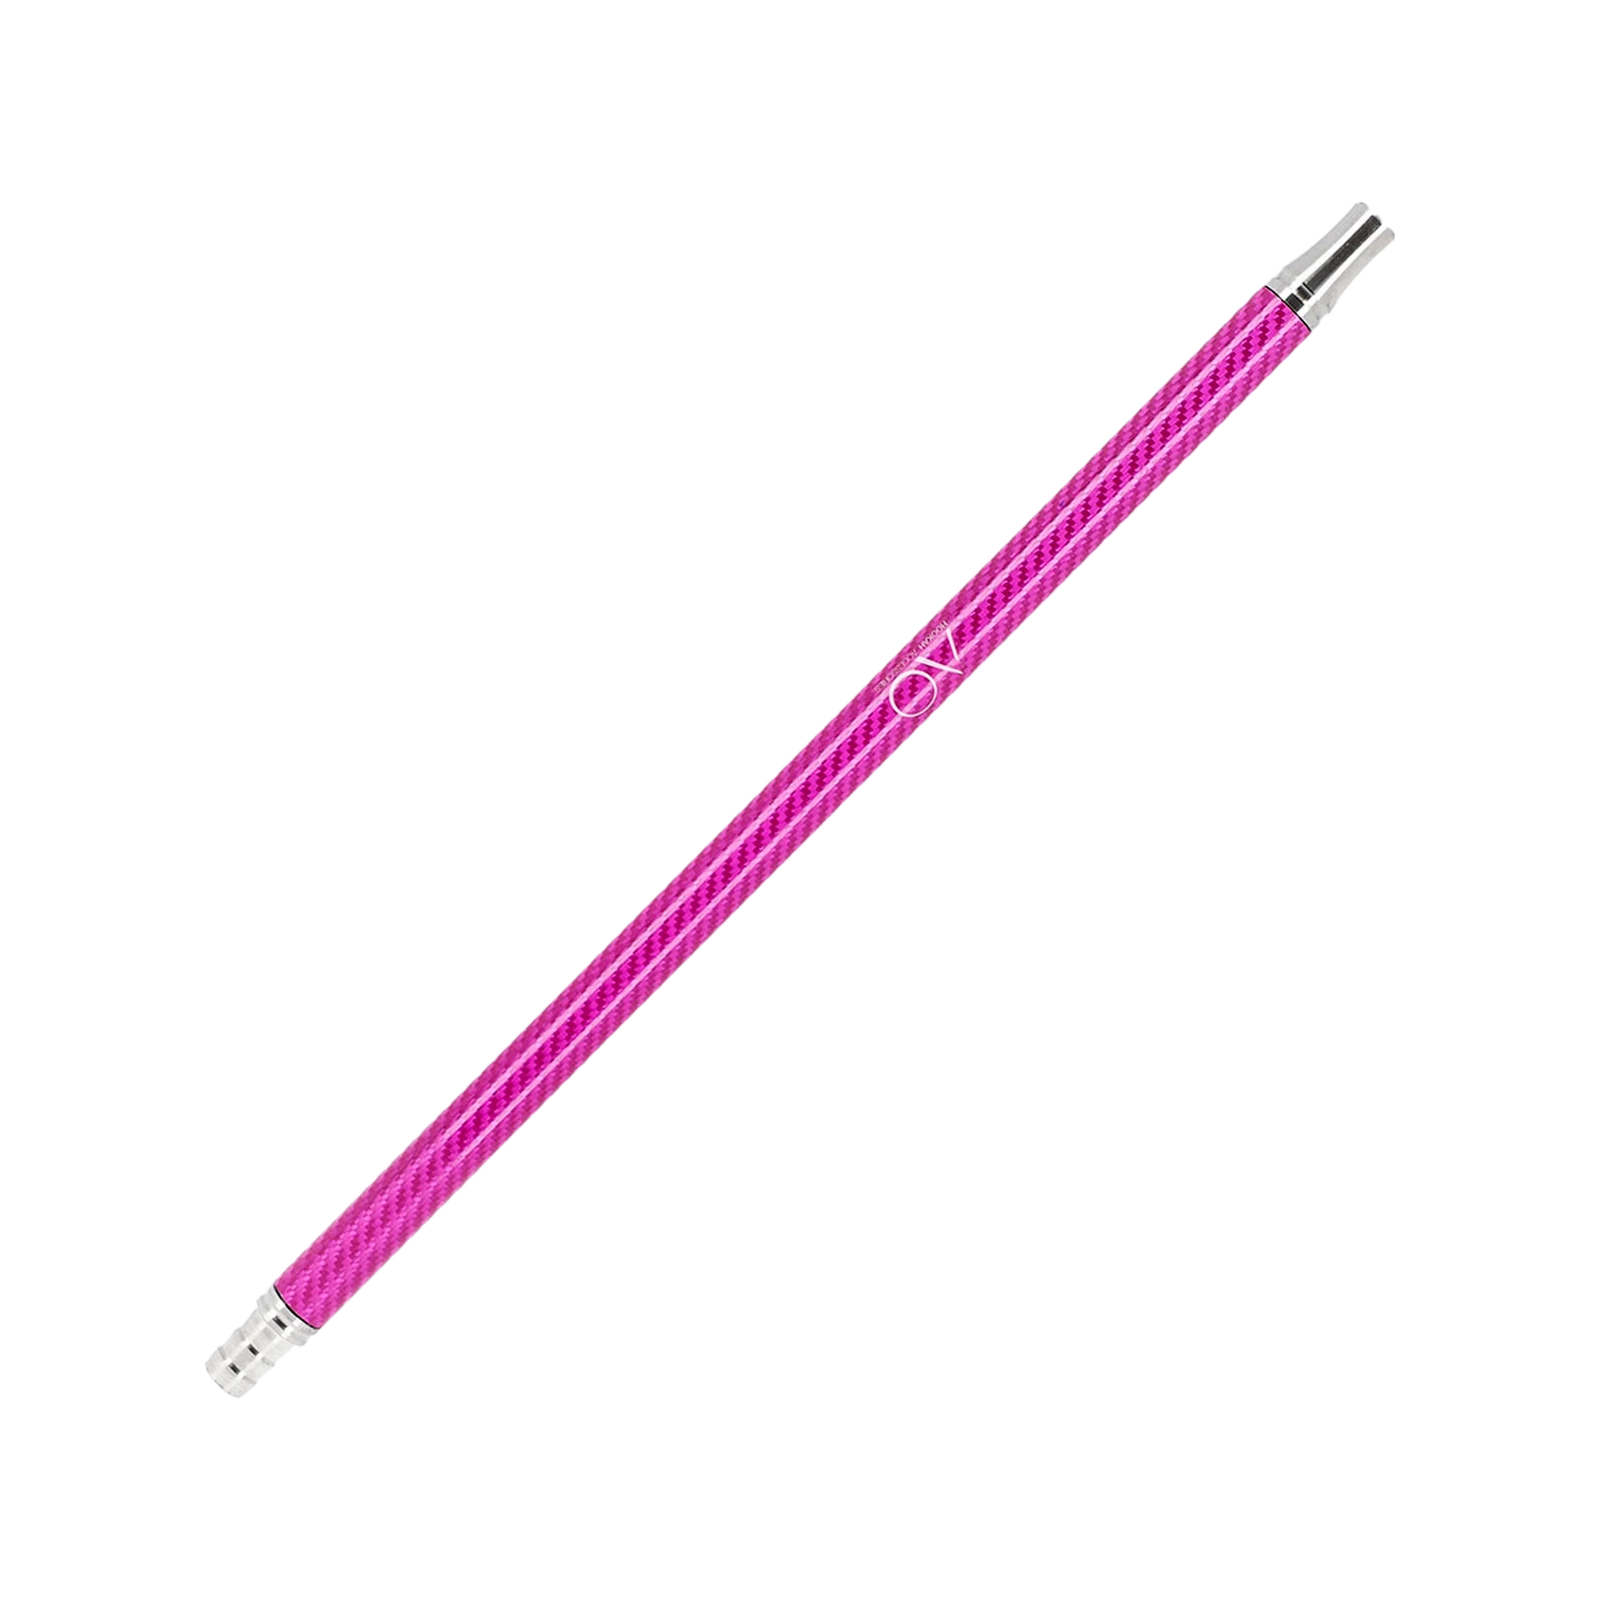 AO - Carbonmundstück - V2A Edelstahl - Pink | Shisha-Zubehör 1